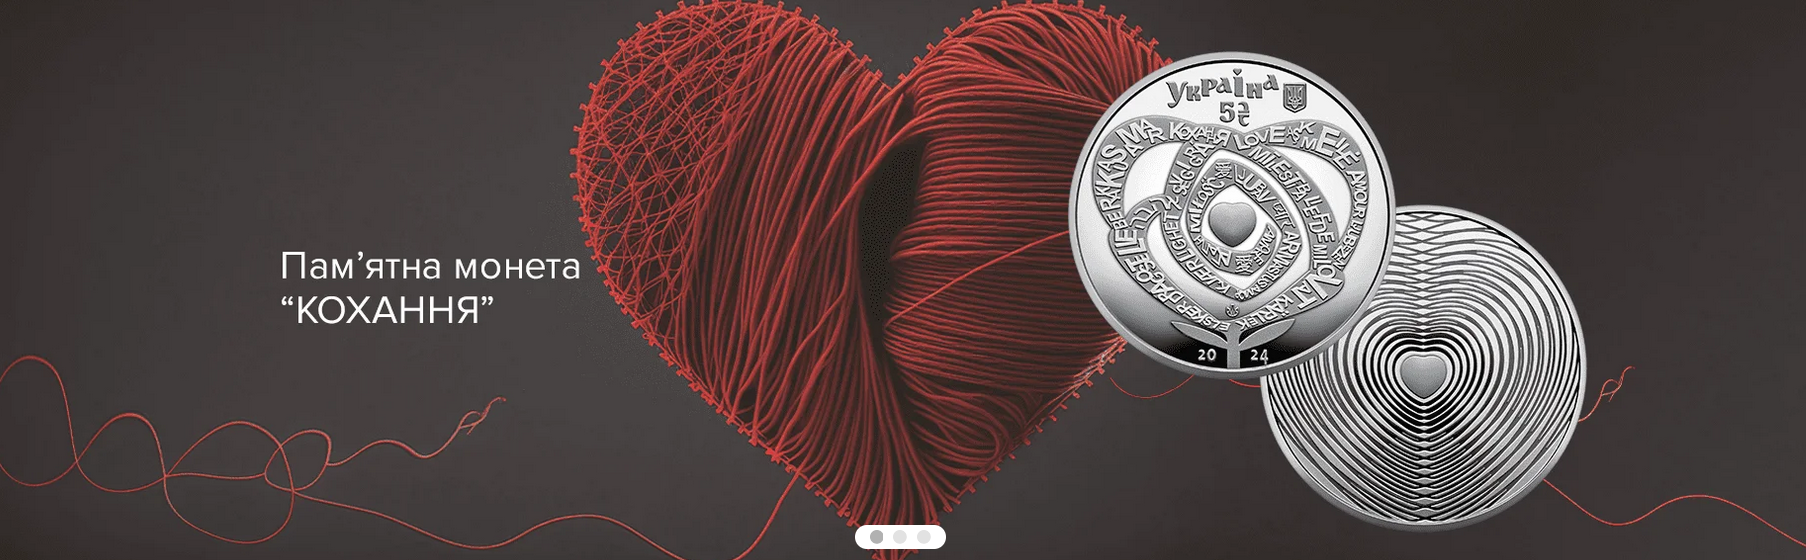 Национальный банк запустил в оборот памятную монету "Любовь"